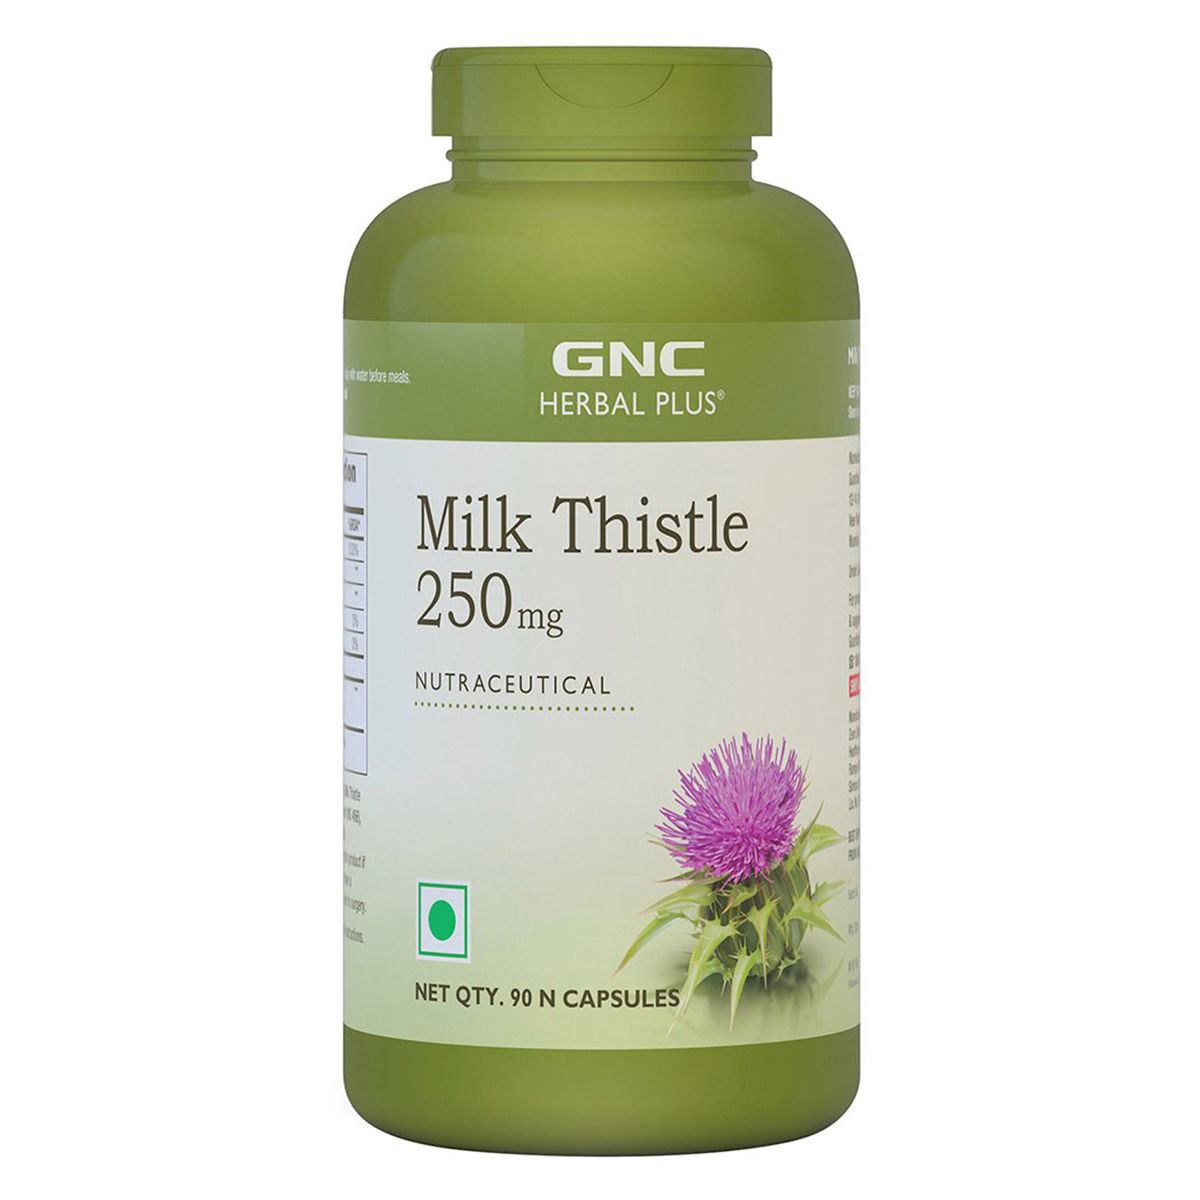 Buy GNC Herbal Plus Milk Thistle 250 mg, 90 Capsules Online